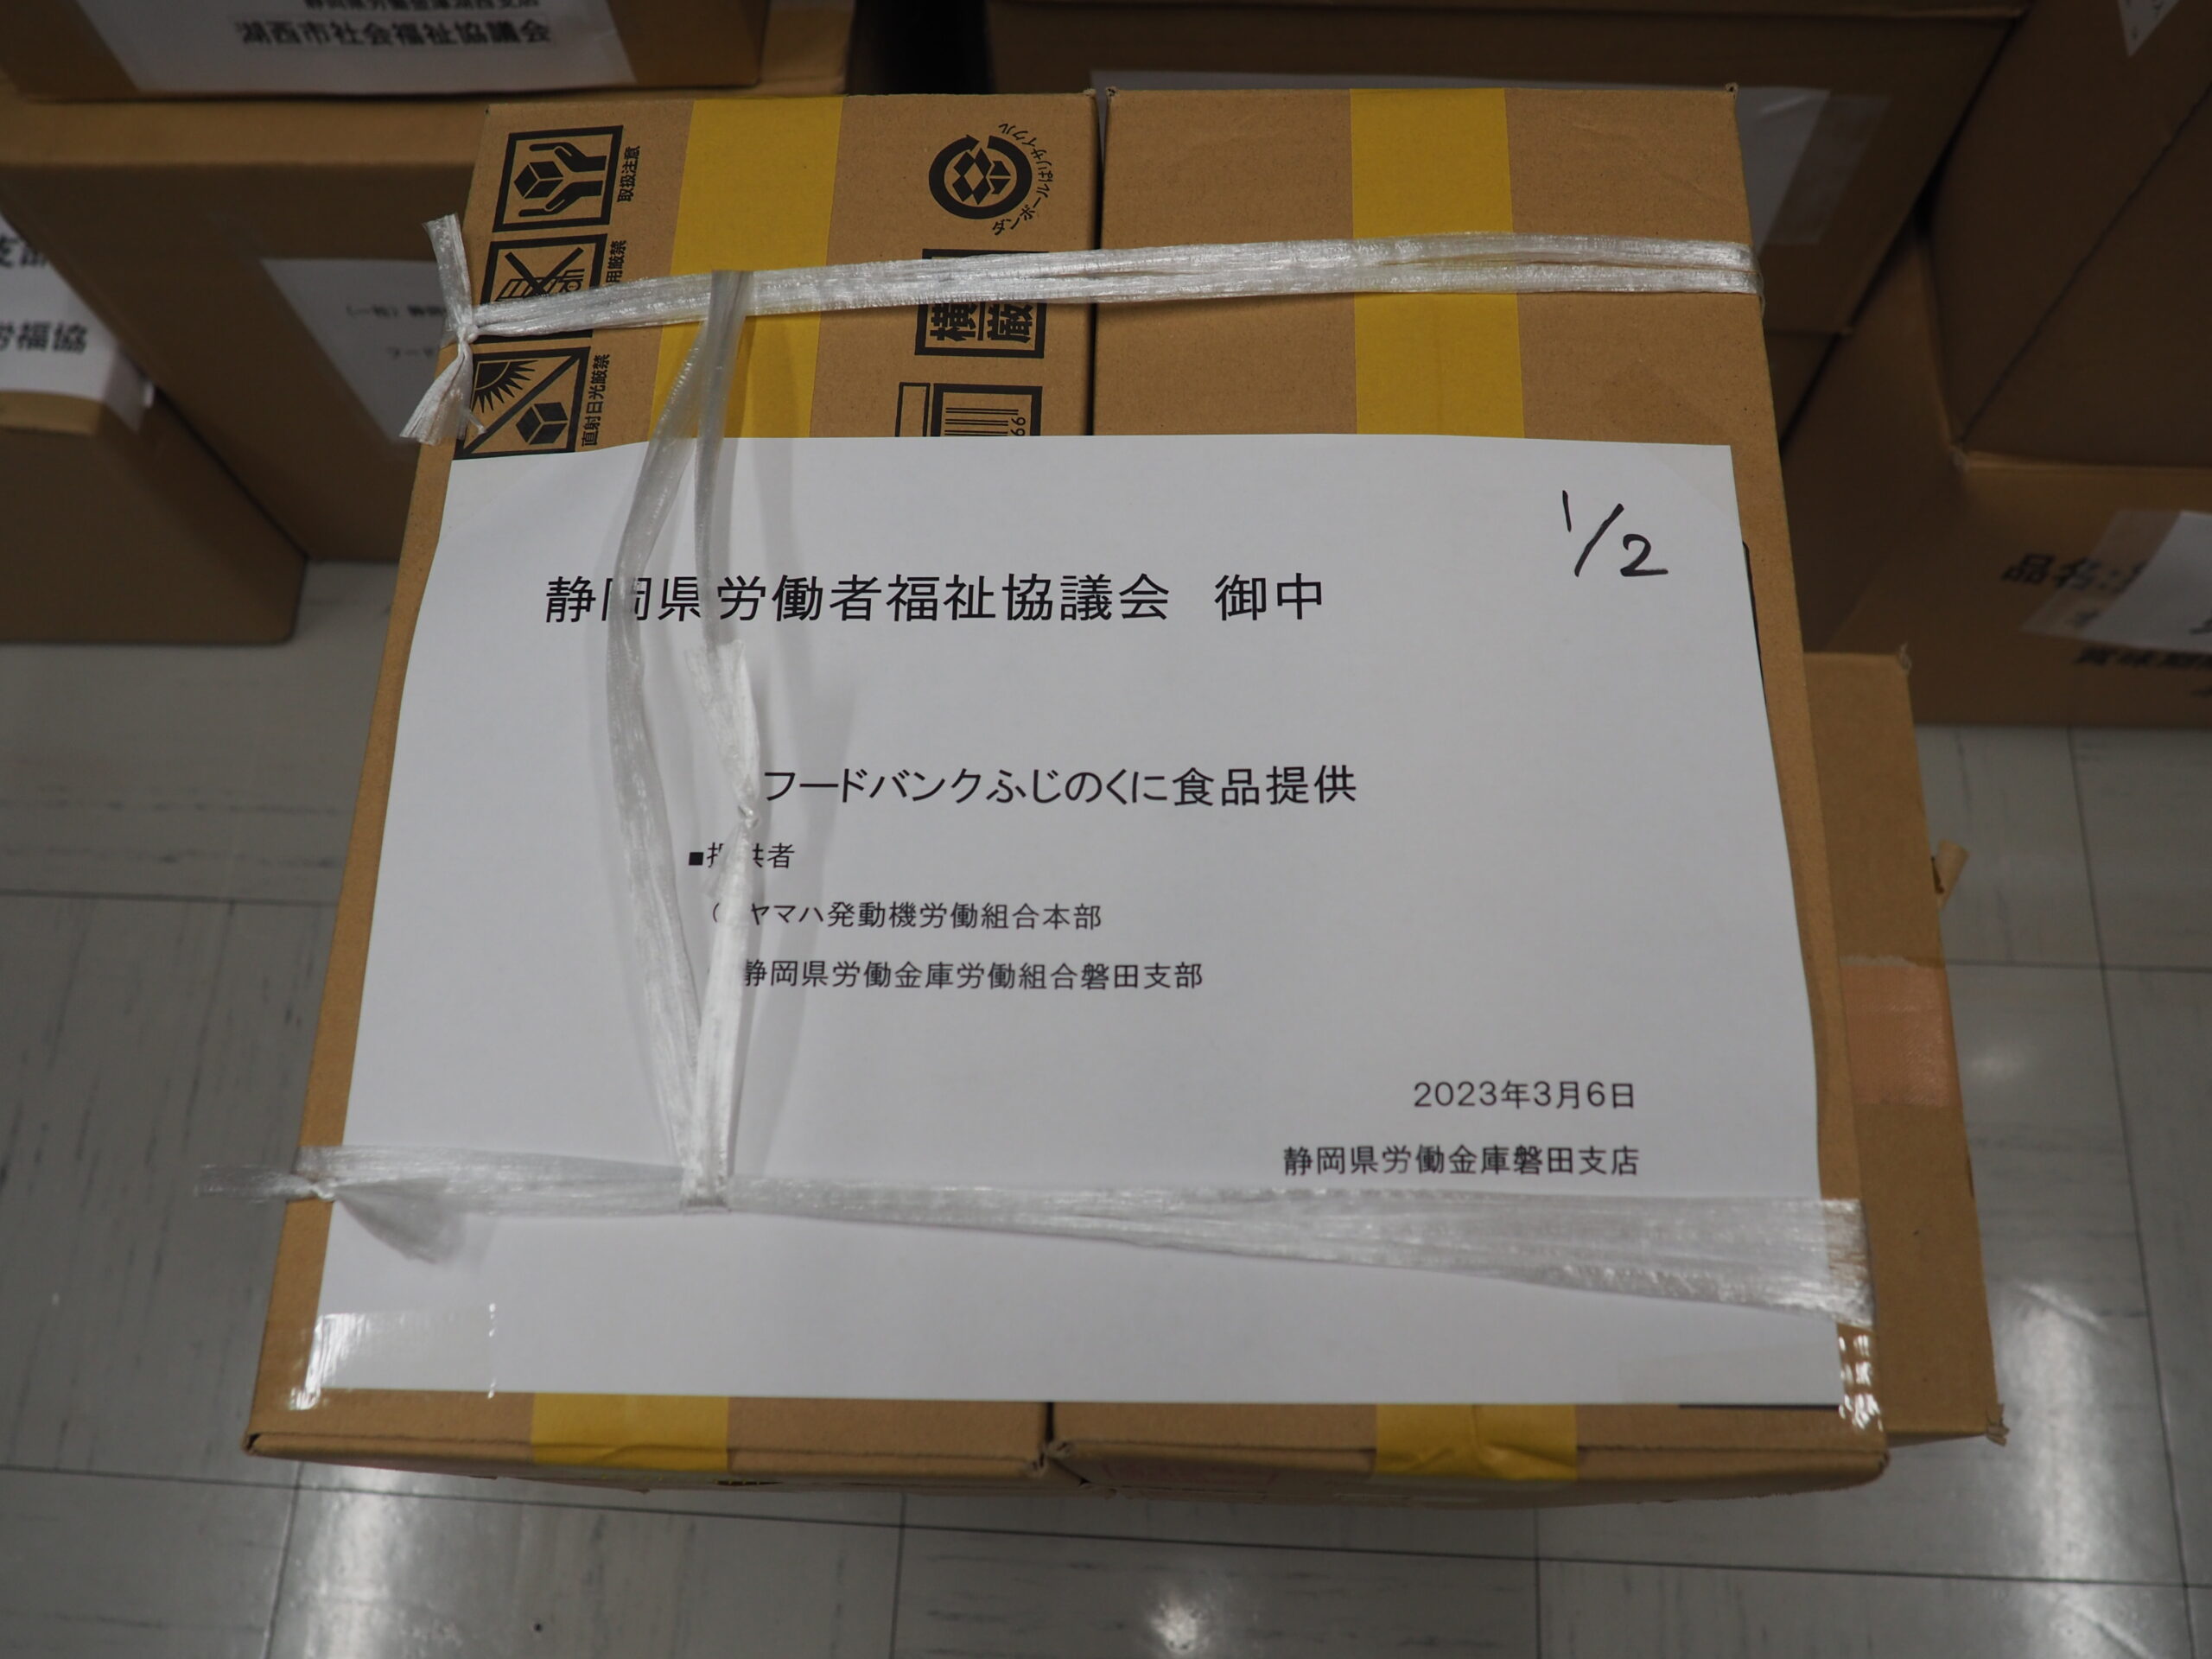 ヤマハ発動機労働組合本部様・こくみん共済coop共済ショップ静岡店様から食品を提供いただきました。